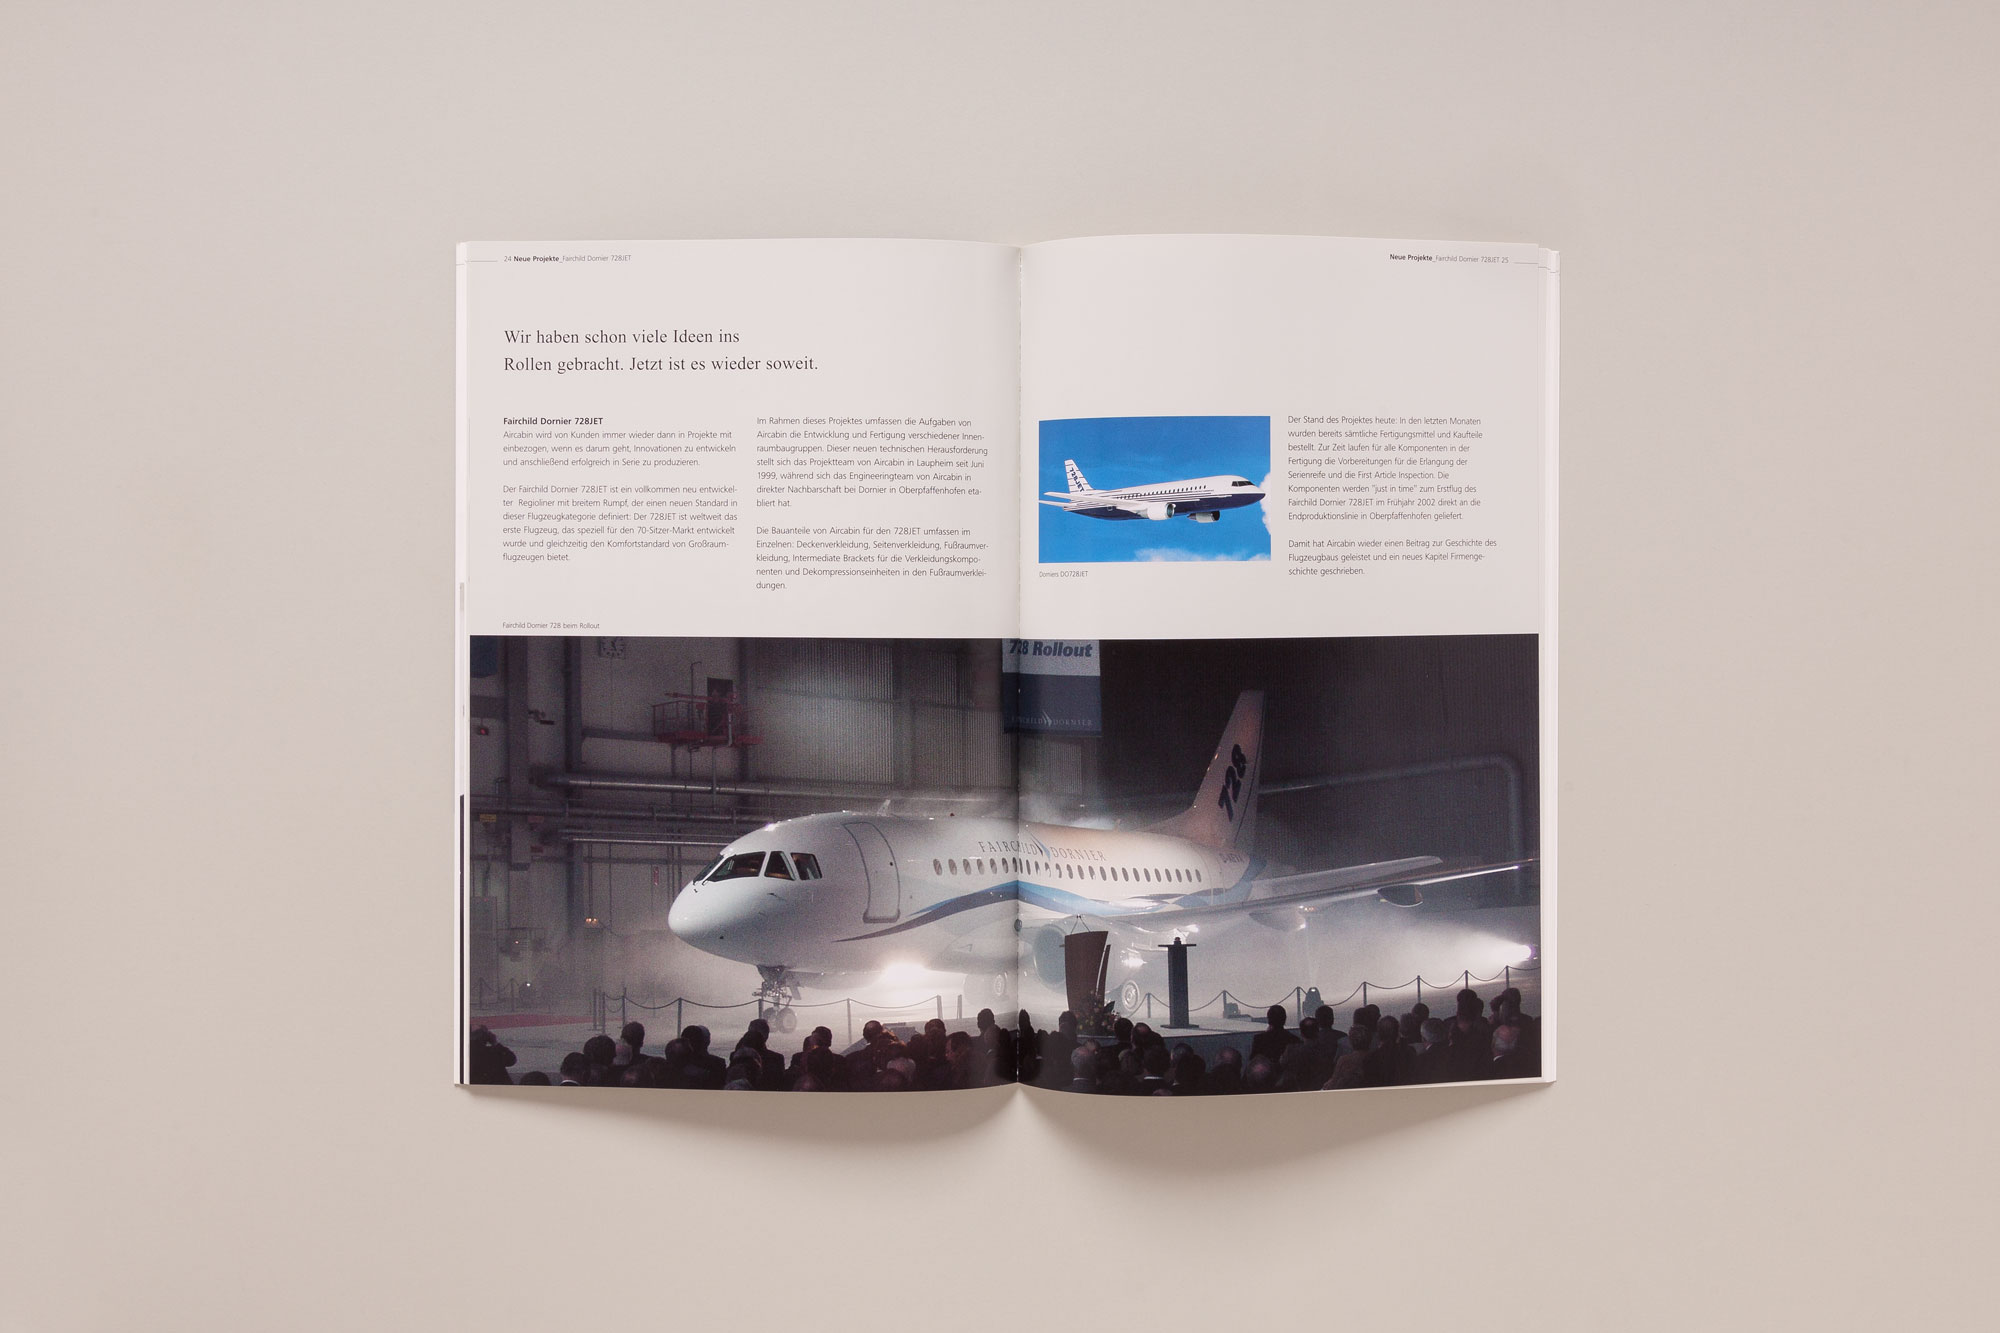 75a gestaltet den Geschäftsbericht für Aircabin, einer Tochtergesellschaft von Airbus Deutschland